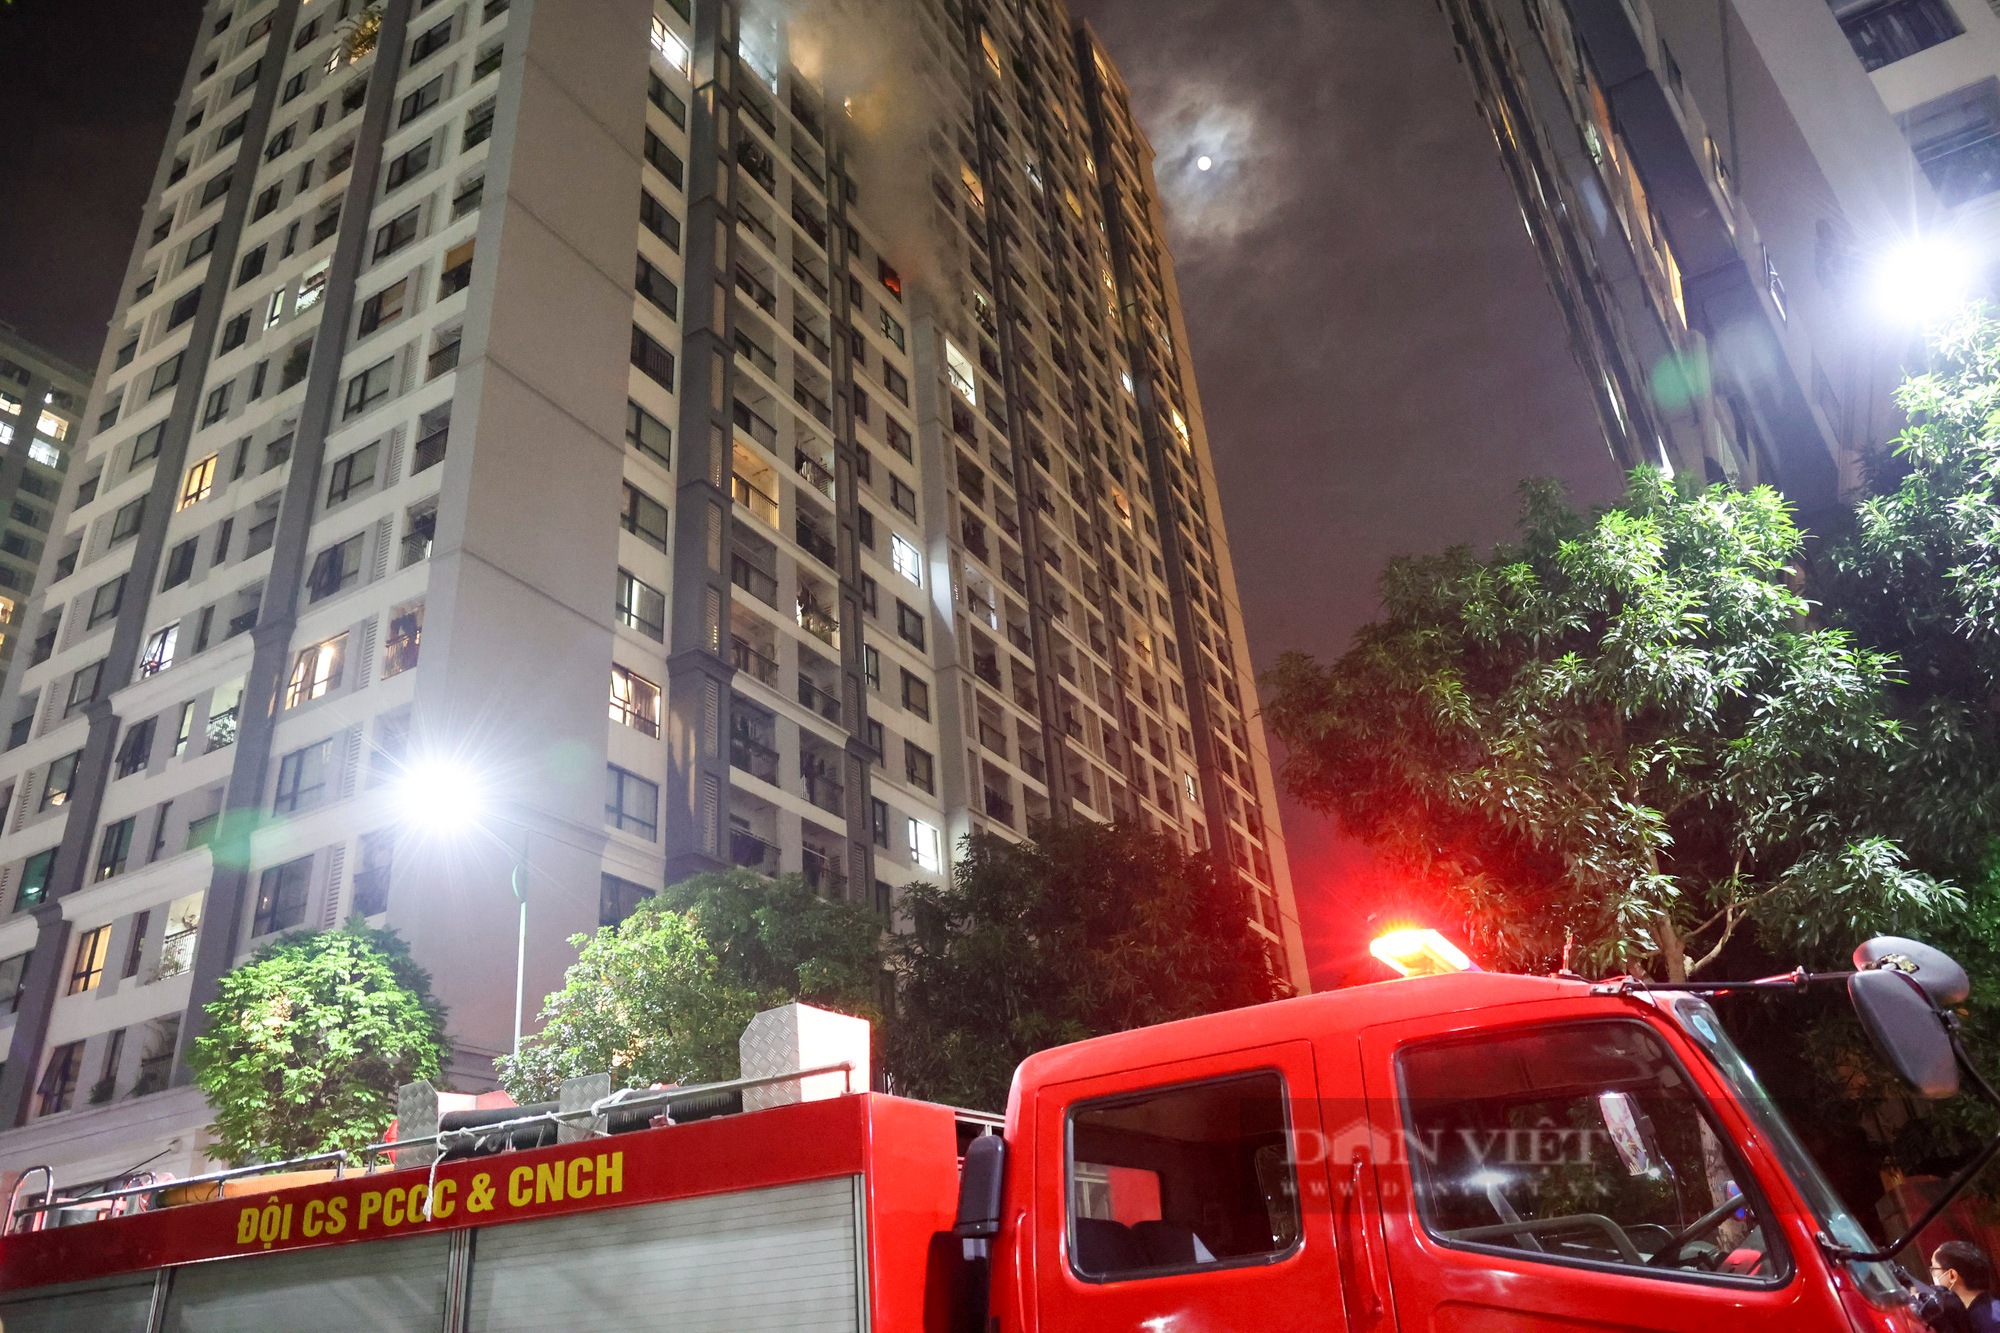 Hà Nội: Cháy căn hộ tại tầng 15 Times City, hàng trăm cư dân hoảng hốt tháo chạy trong đêm - Ảnh 2.